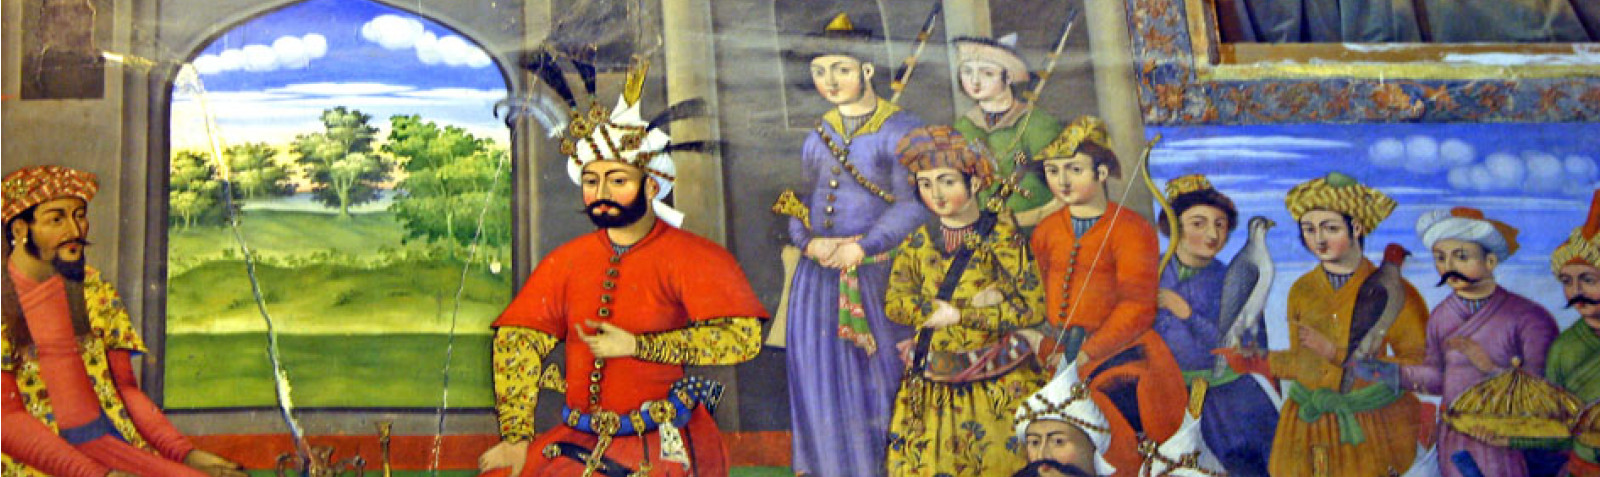 موزه چهلستون (اصفهان)